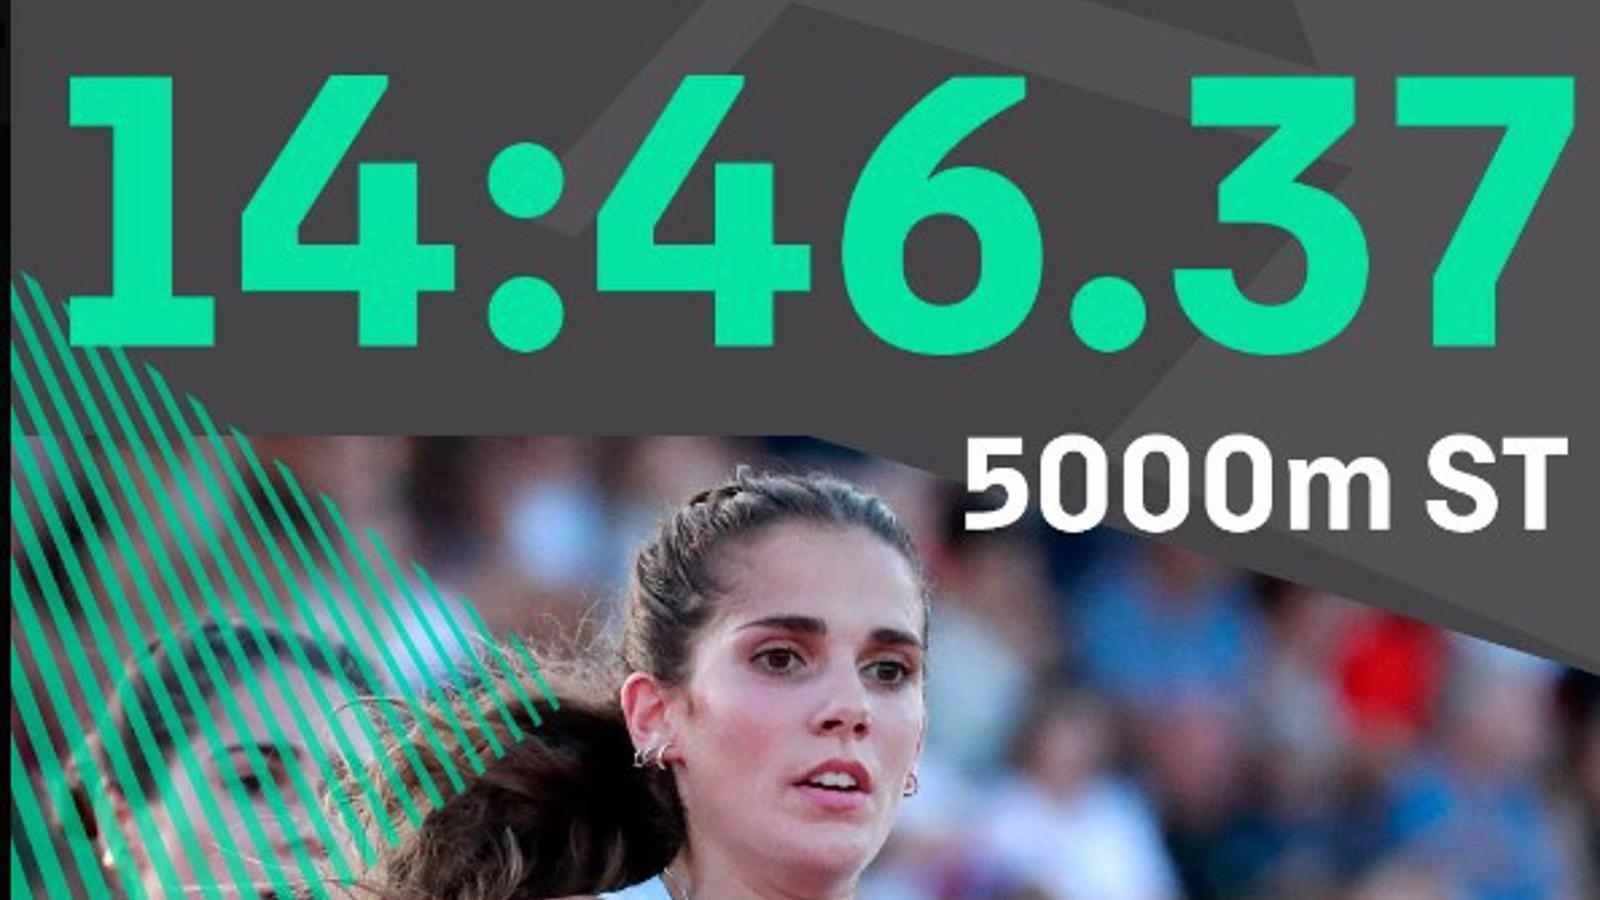 Atletismo.- Marta García firma el récord de España de 5.000 metros en pista corta y logra la mínima olímpica